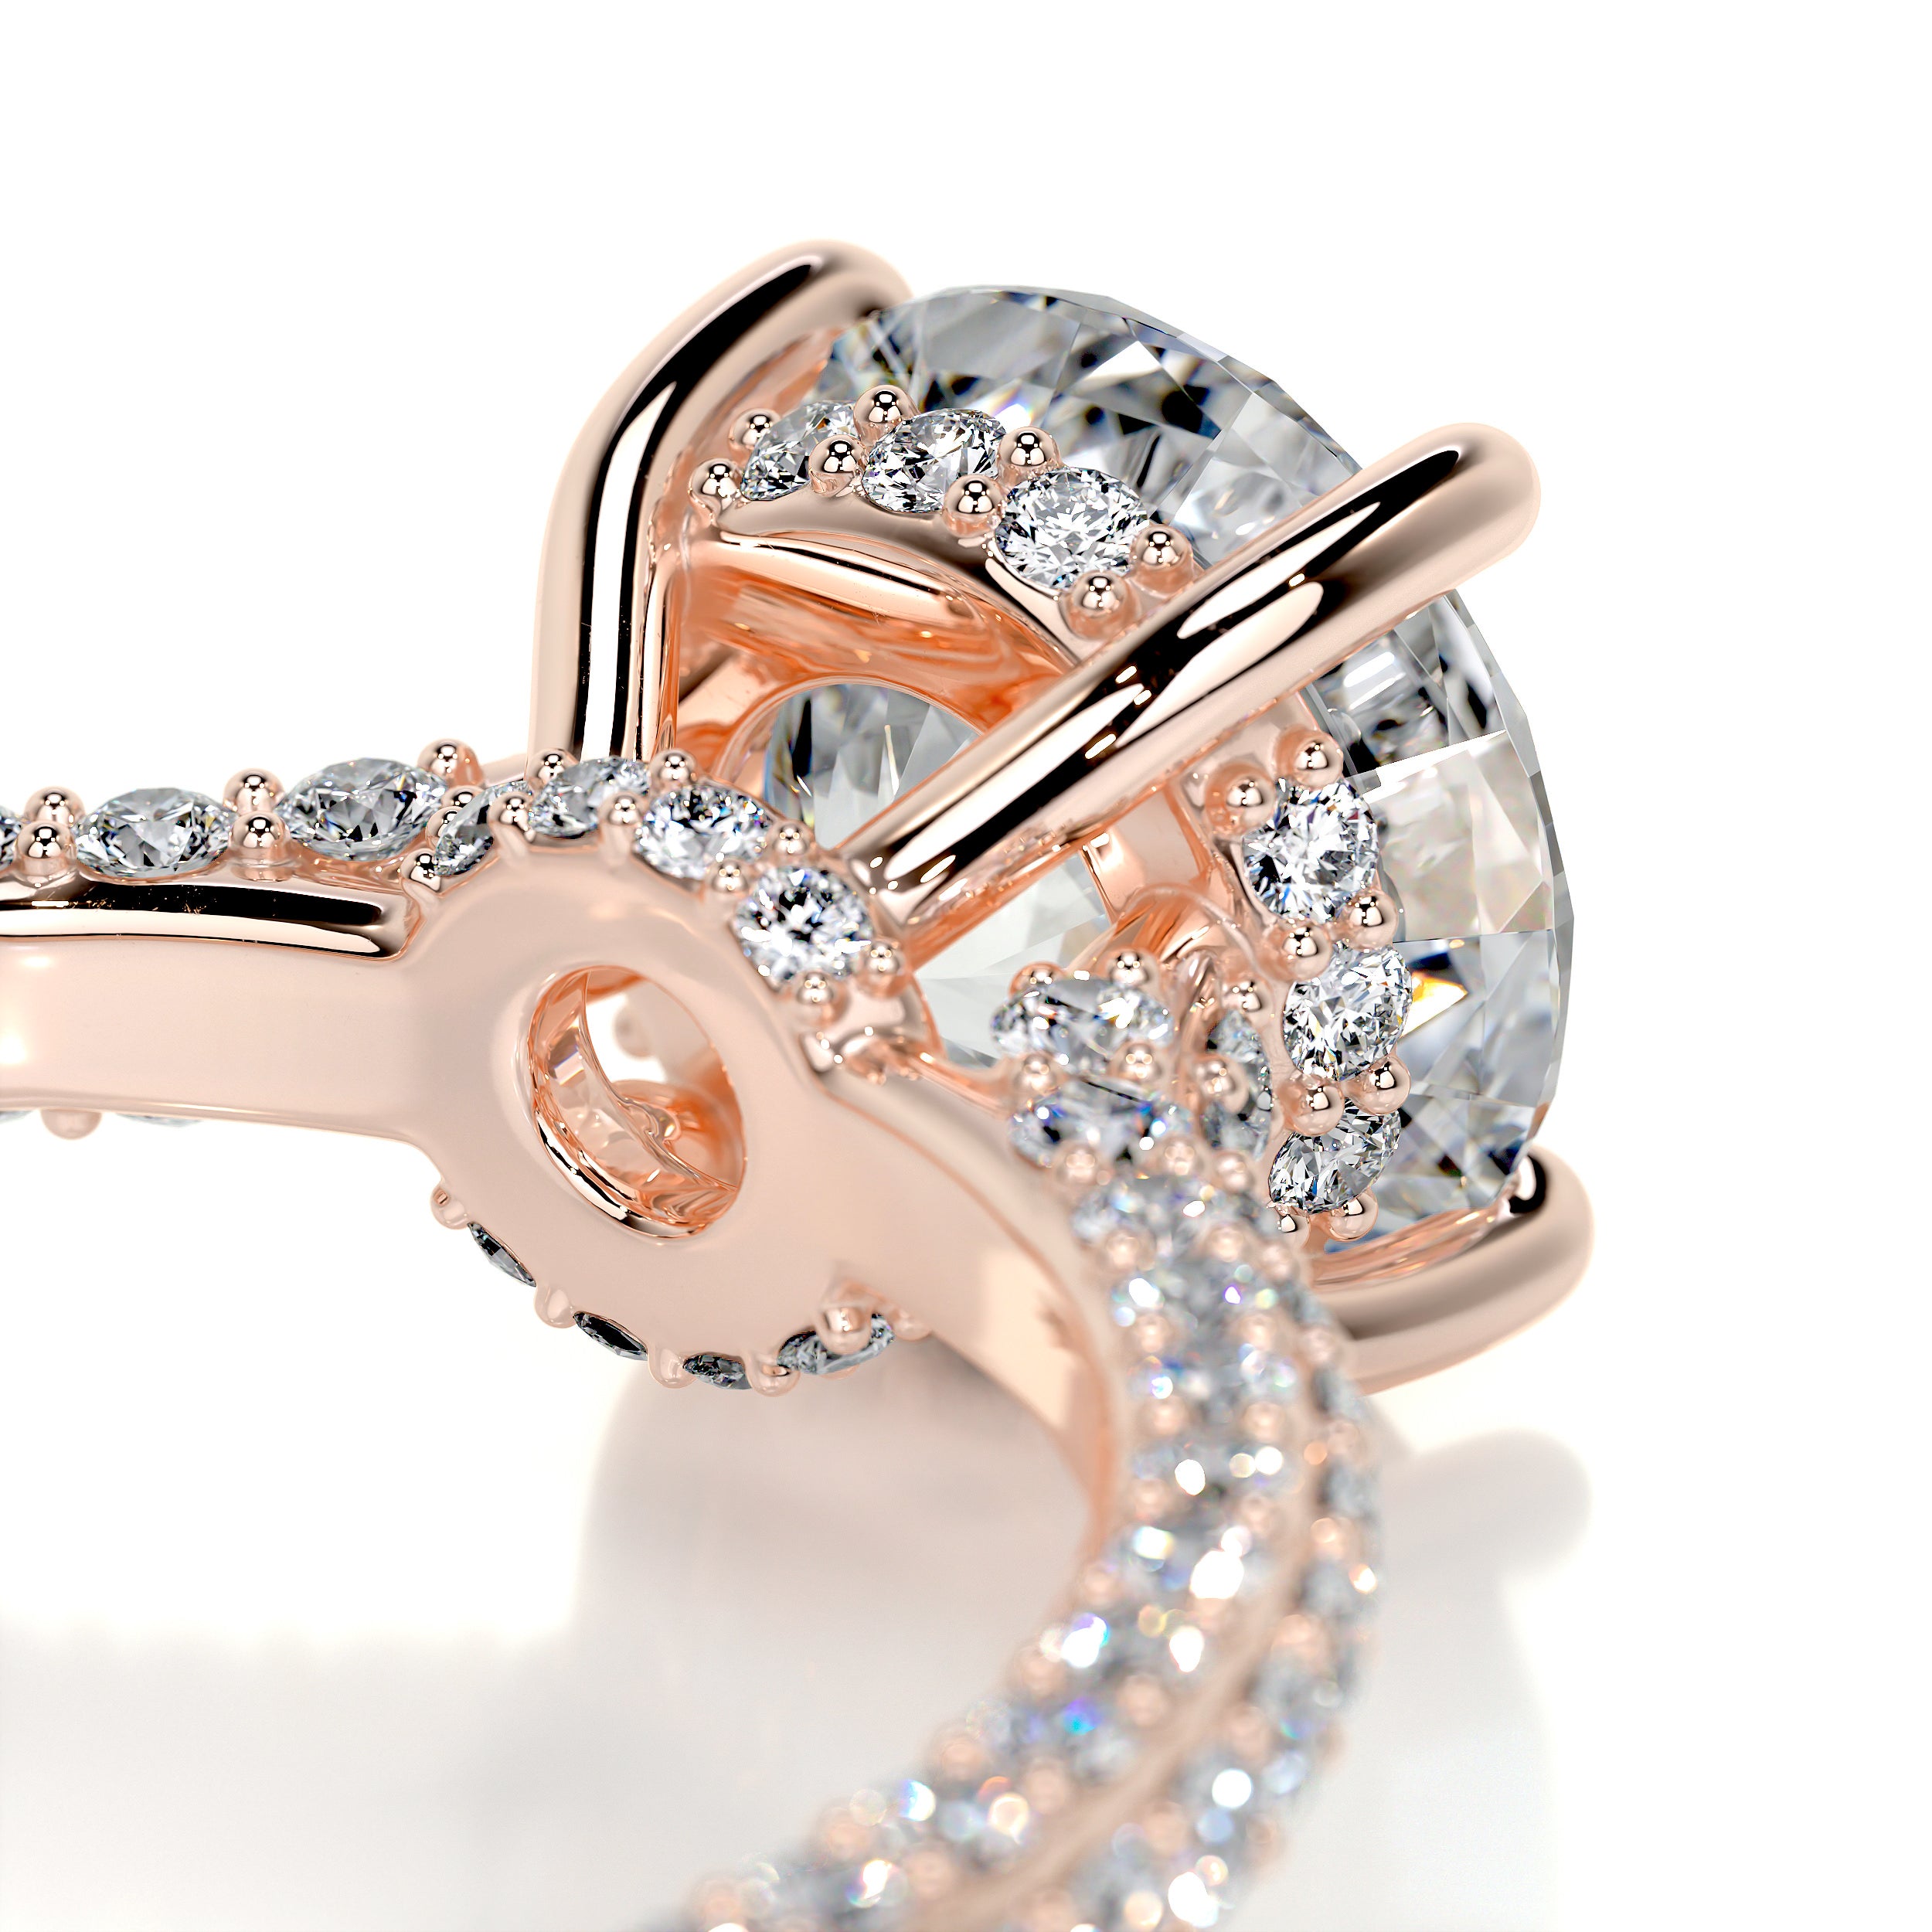 Michaela Diamond Engagement Ring   (2.25 Carat) -14K Rose Gold